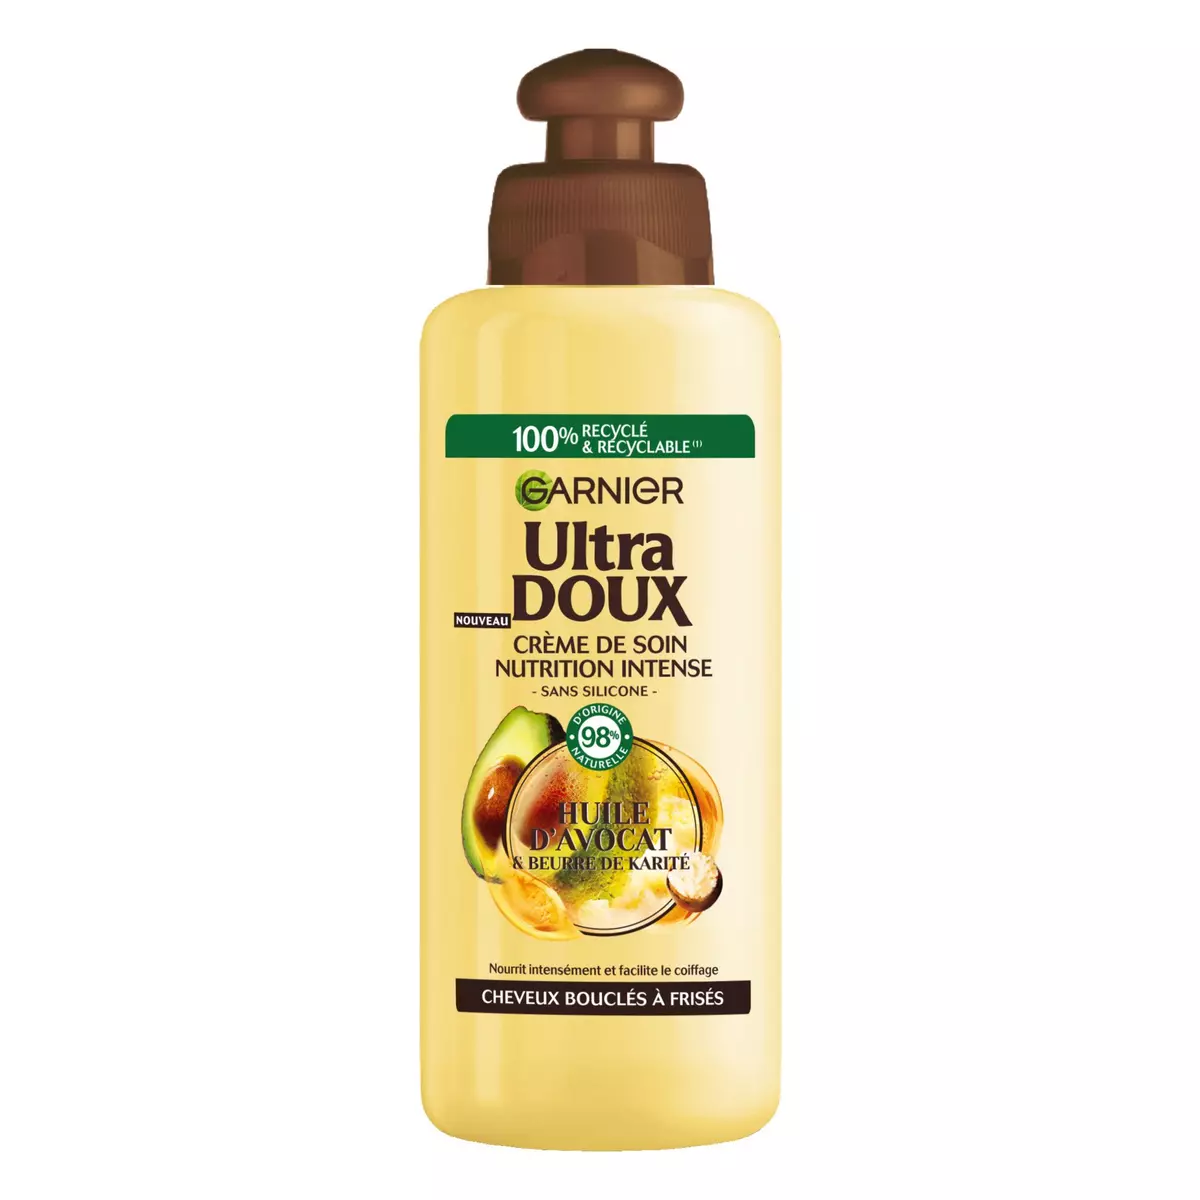 ULTRA DOUX Crème de soin nutrition intense avocat & karité cheveux bouclés à frisés 200ml